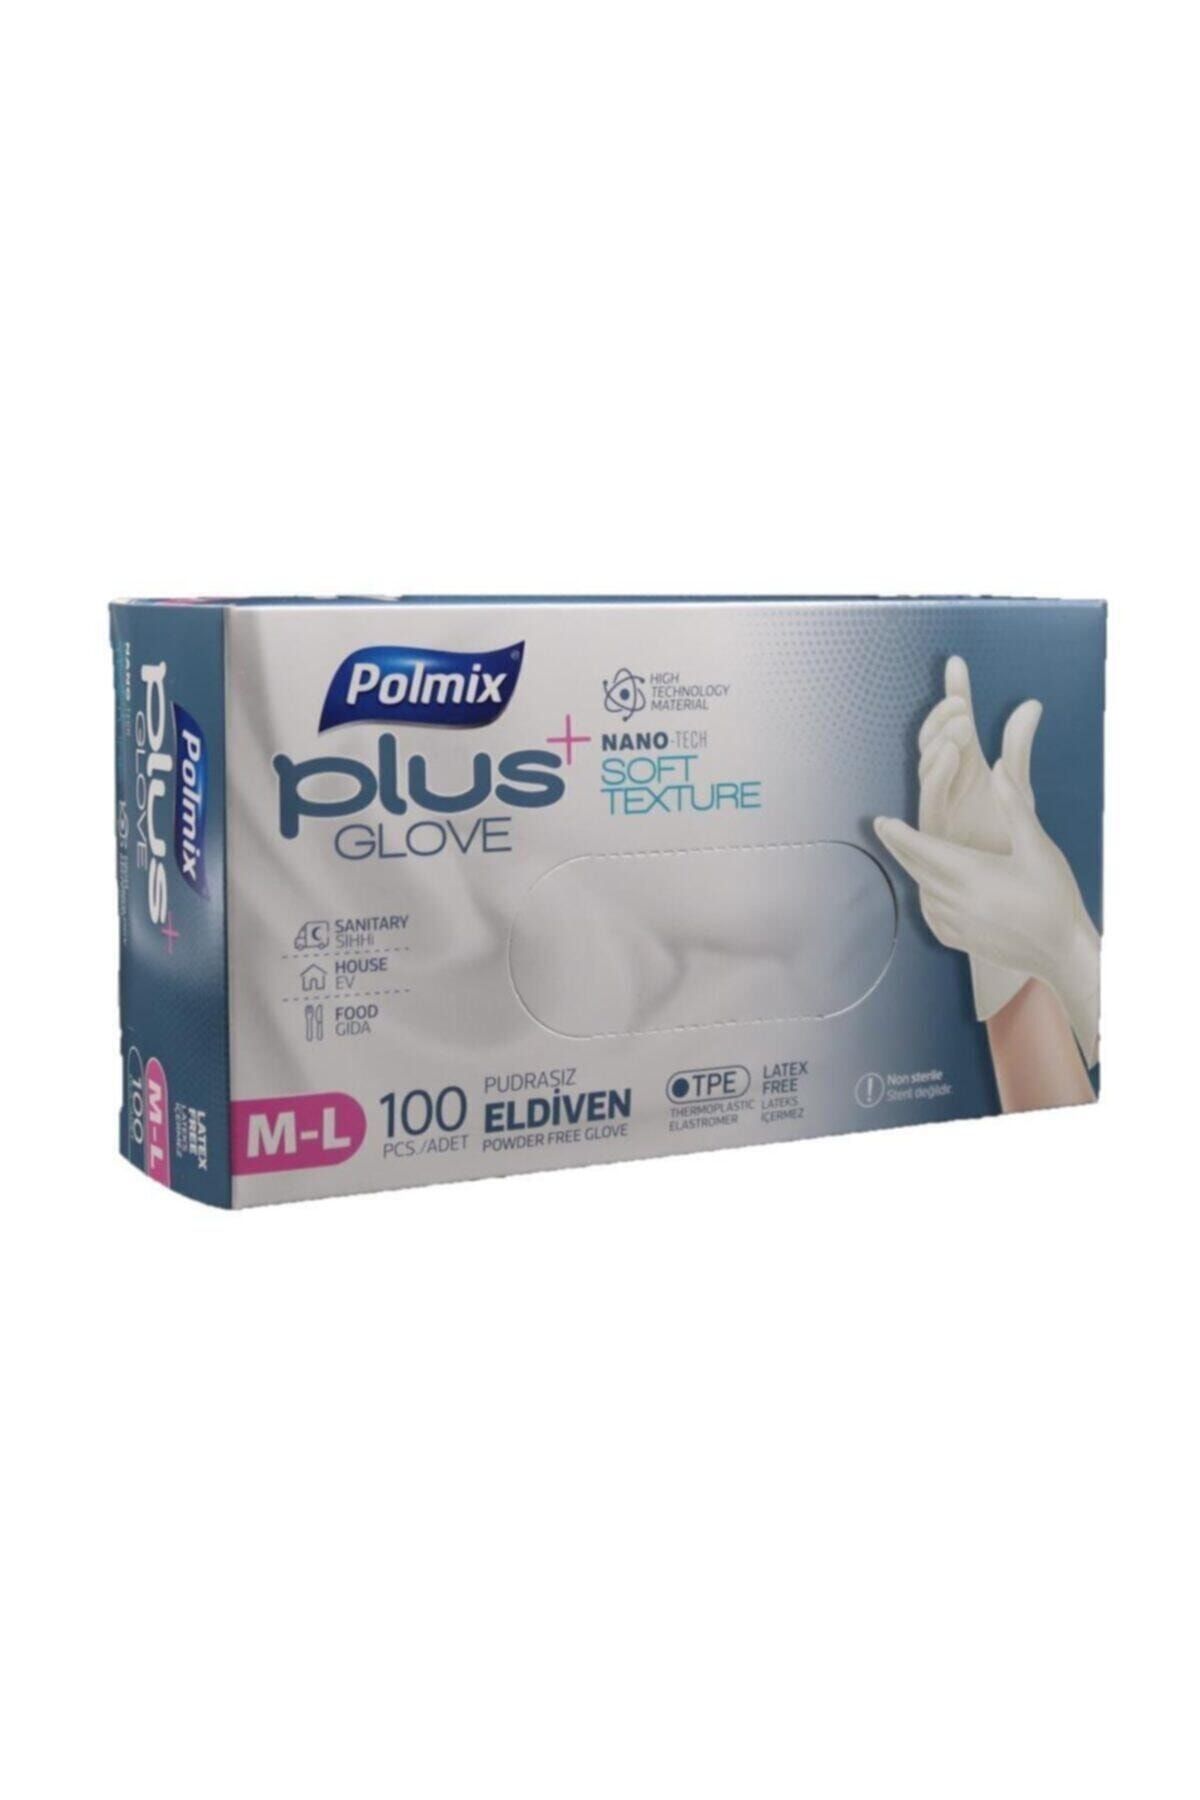 Polmix Plus Glove Şeffaf Pudrasız Eldiven Nano Tech 100'lü M-l